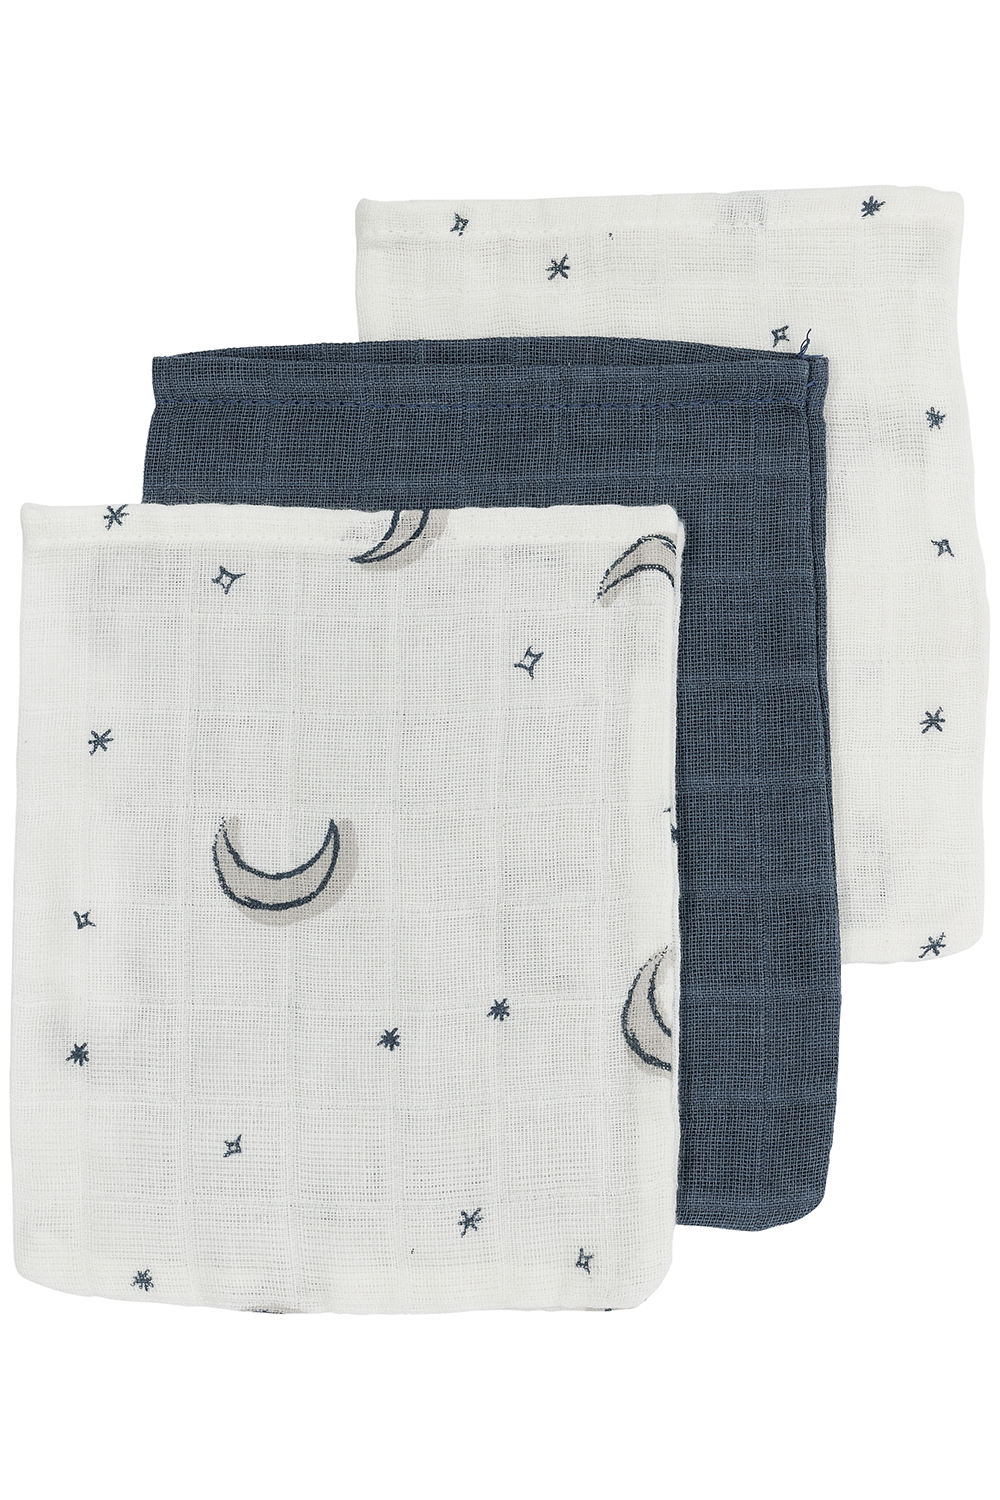 Washcloth 3-pack muslin Moon - indigo - 20x17cm